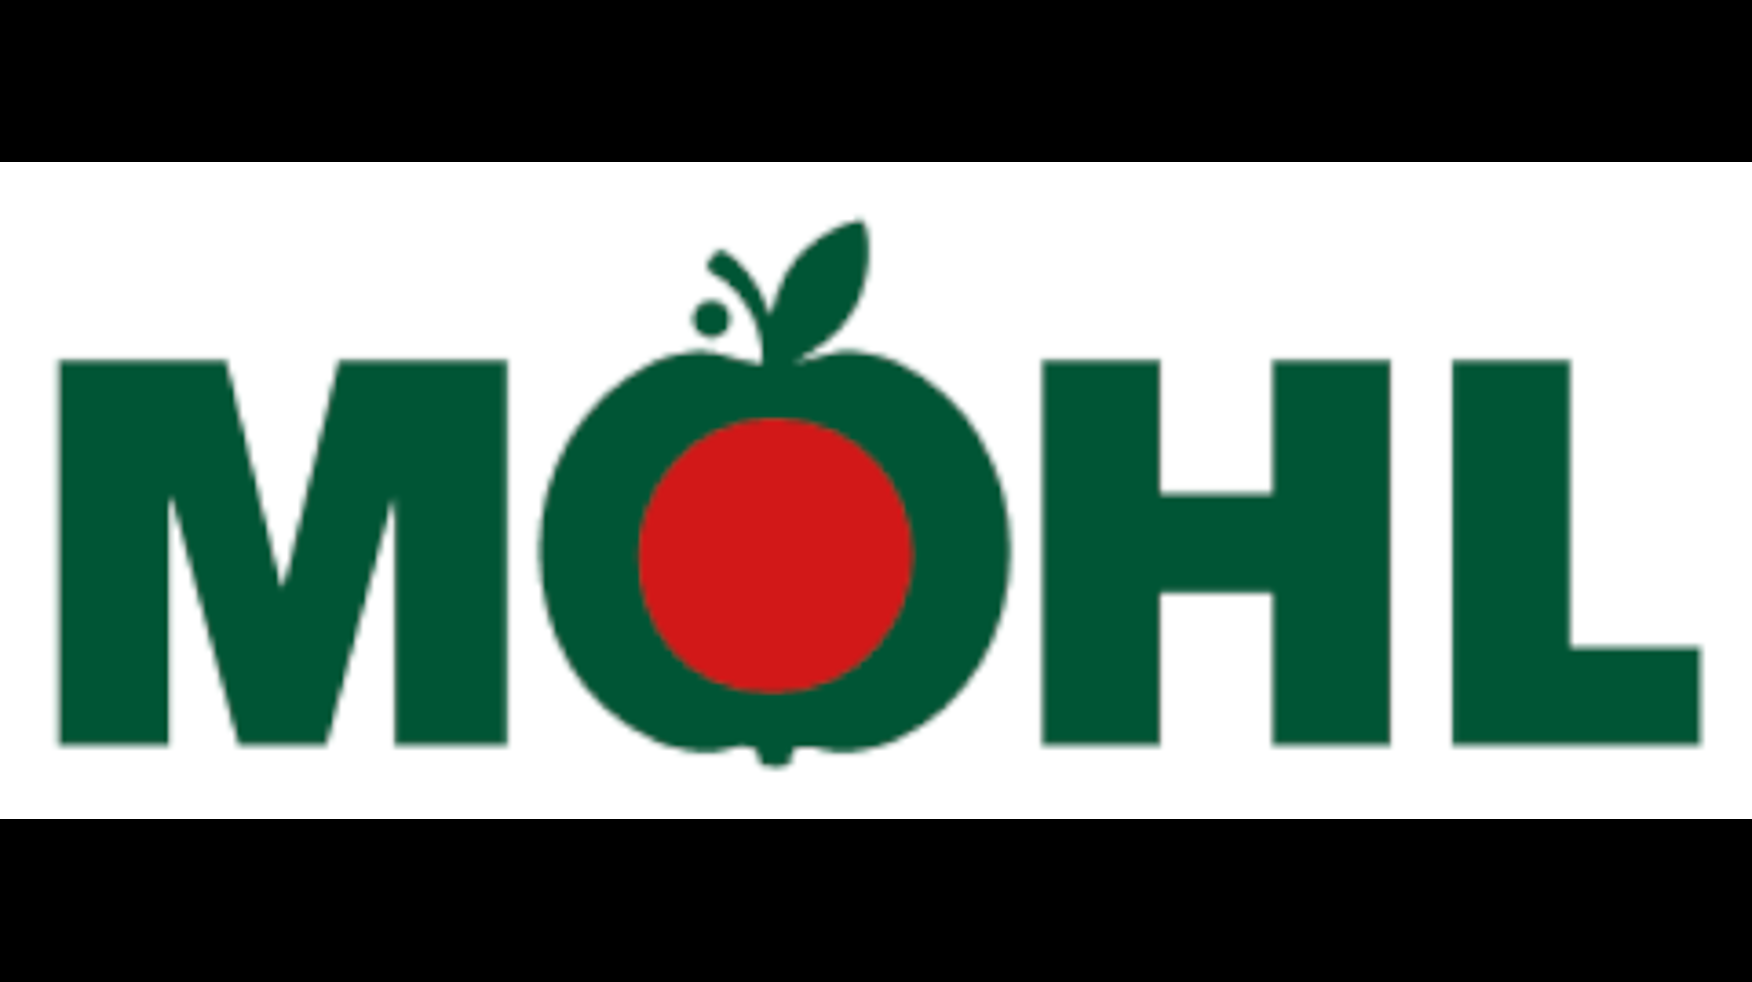 Moehl Logo.png